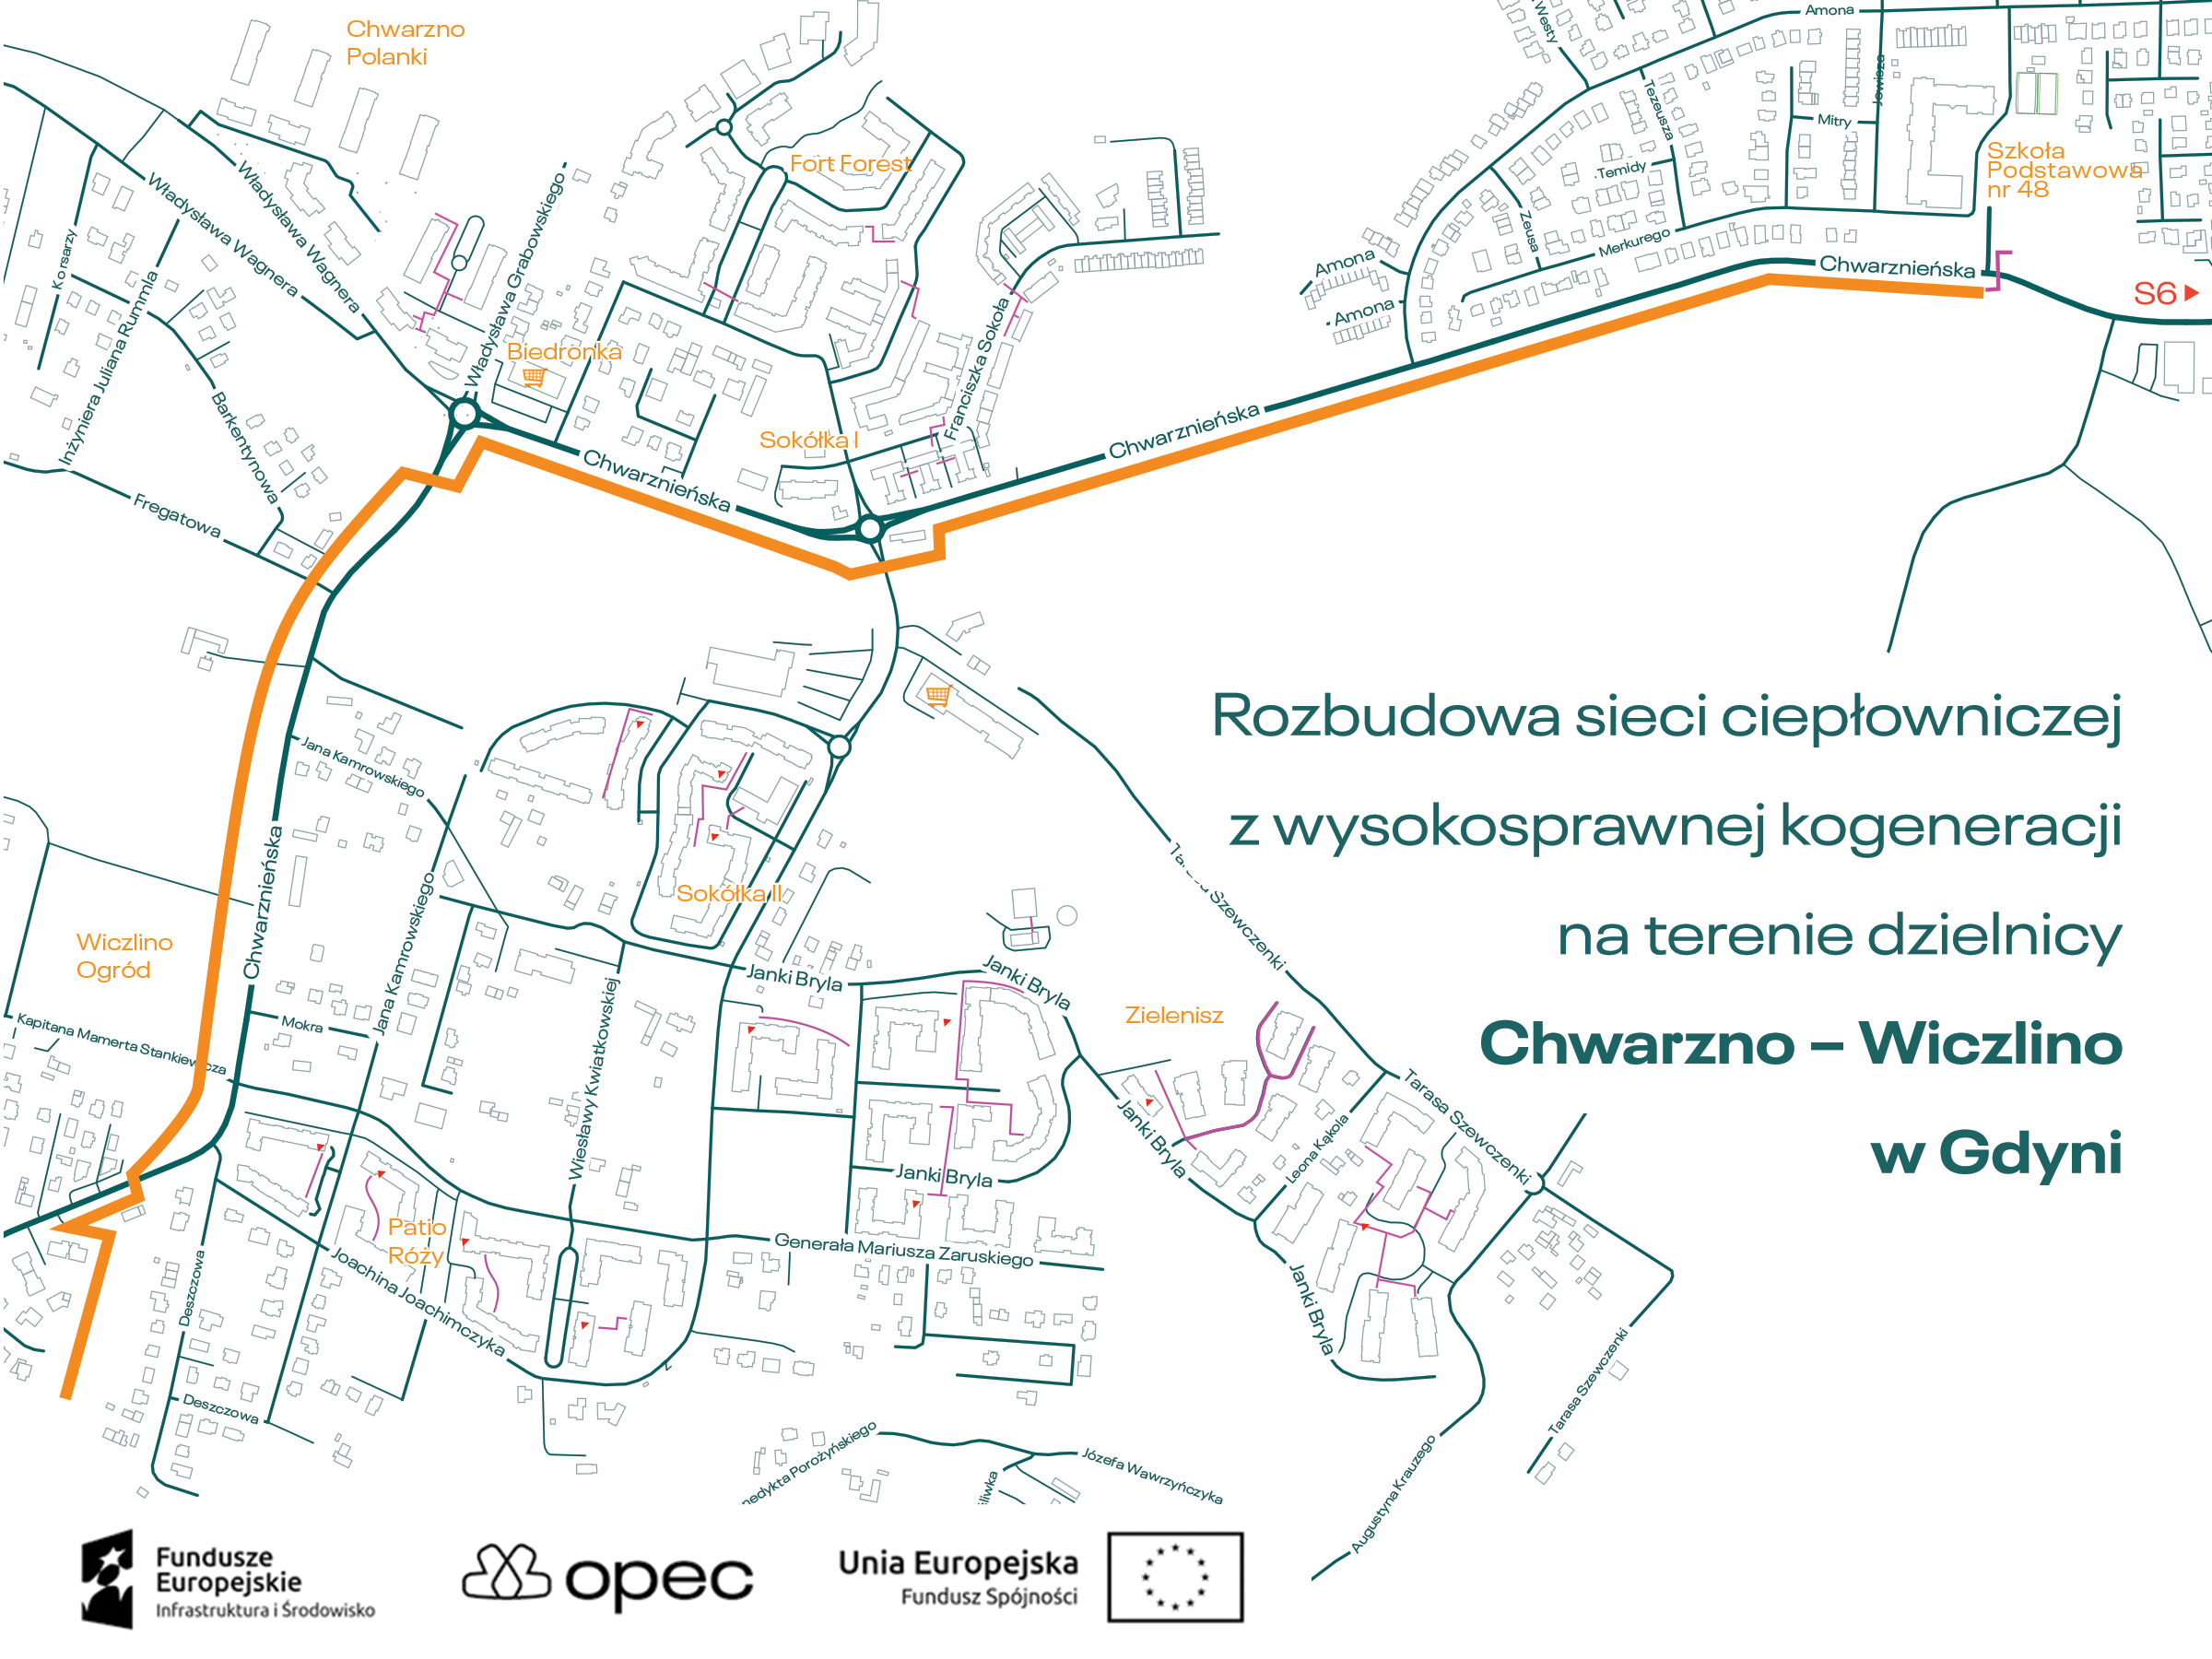 Rozbudowa sieci ciepłowniczej na terenie dzielnicy Chwarzno-Wiczlino